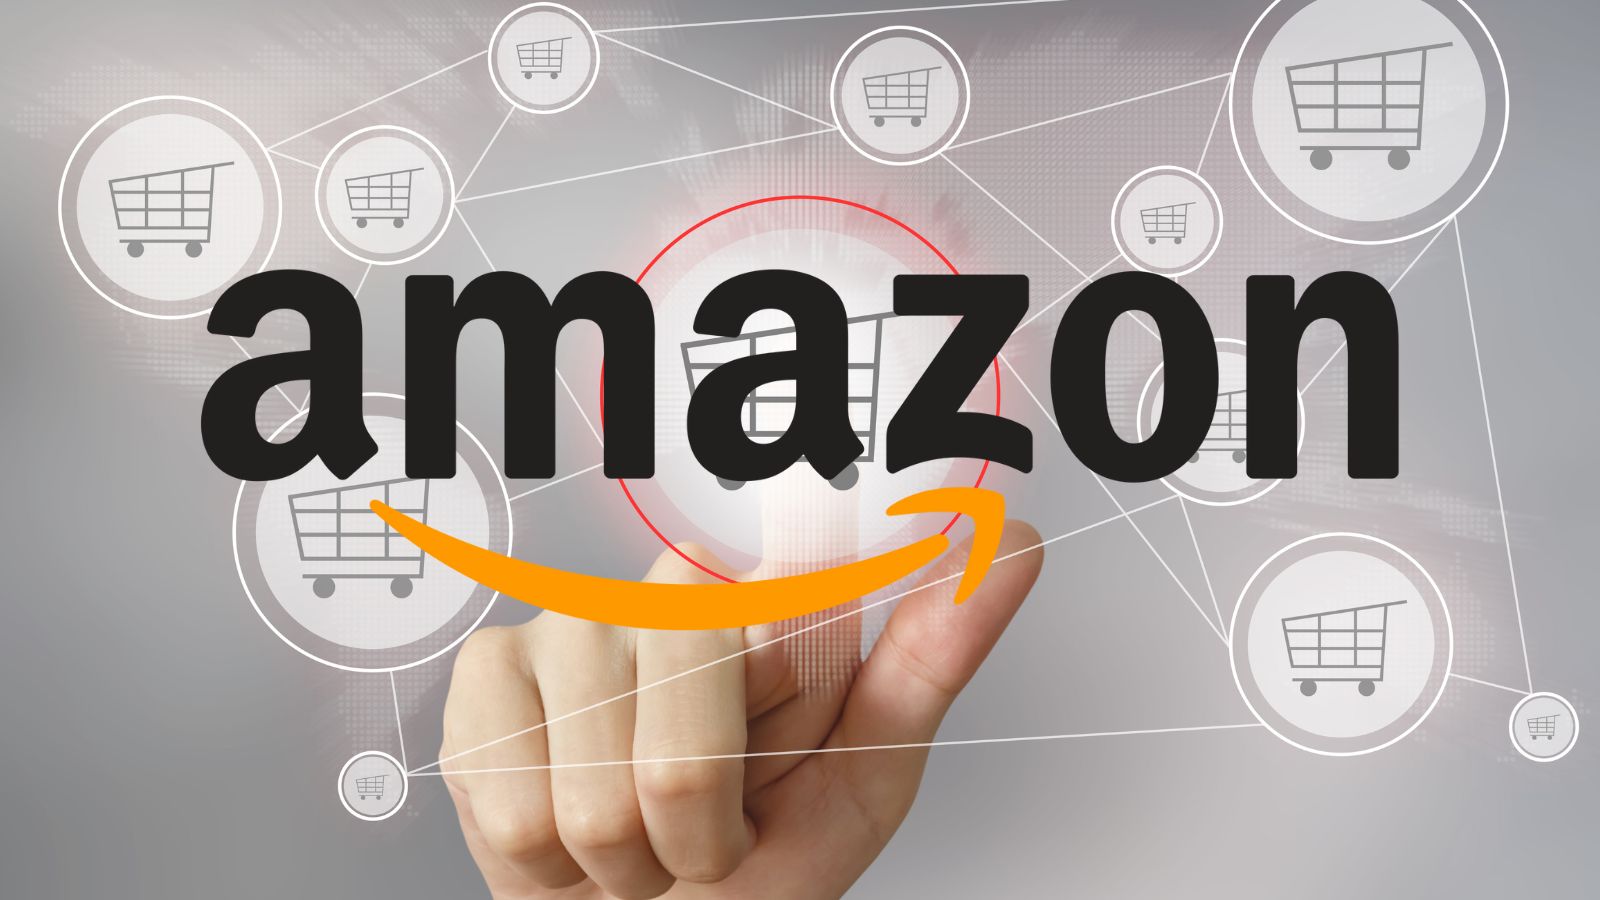 Amazon è folle, batte Unieuro con offerte PRIME all'80%